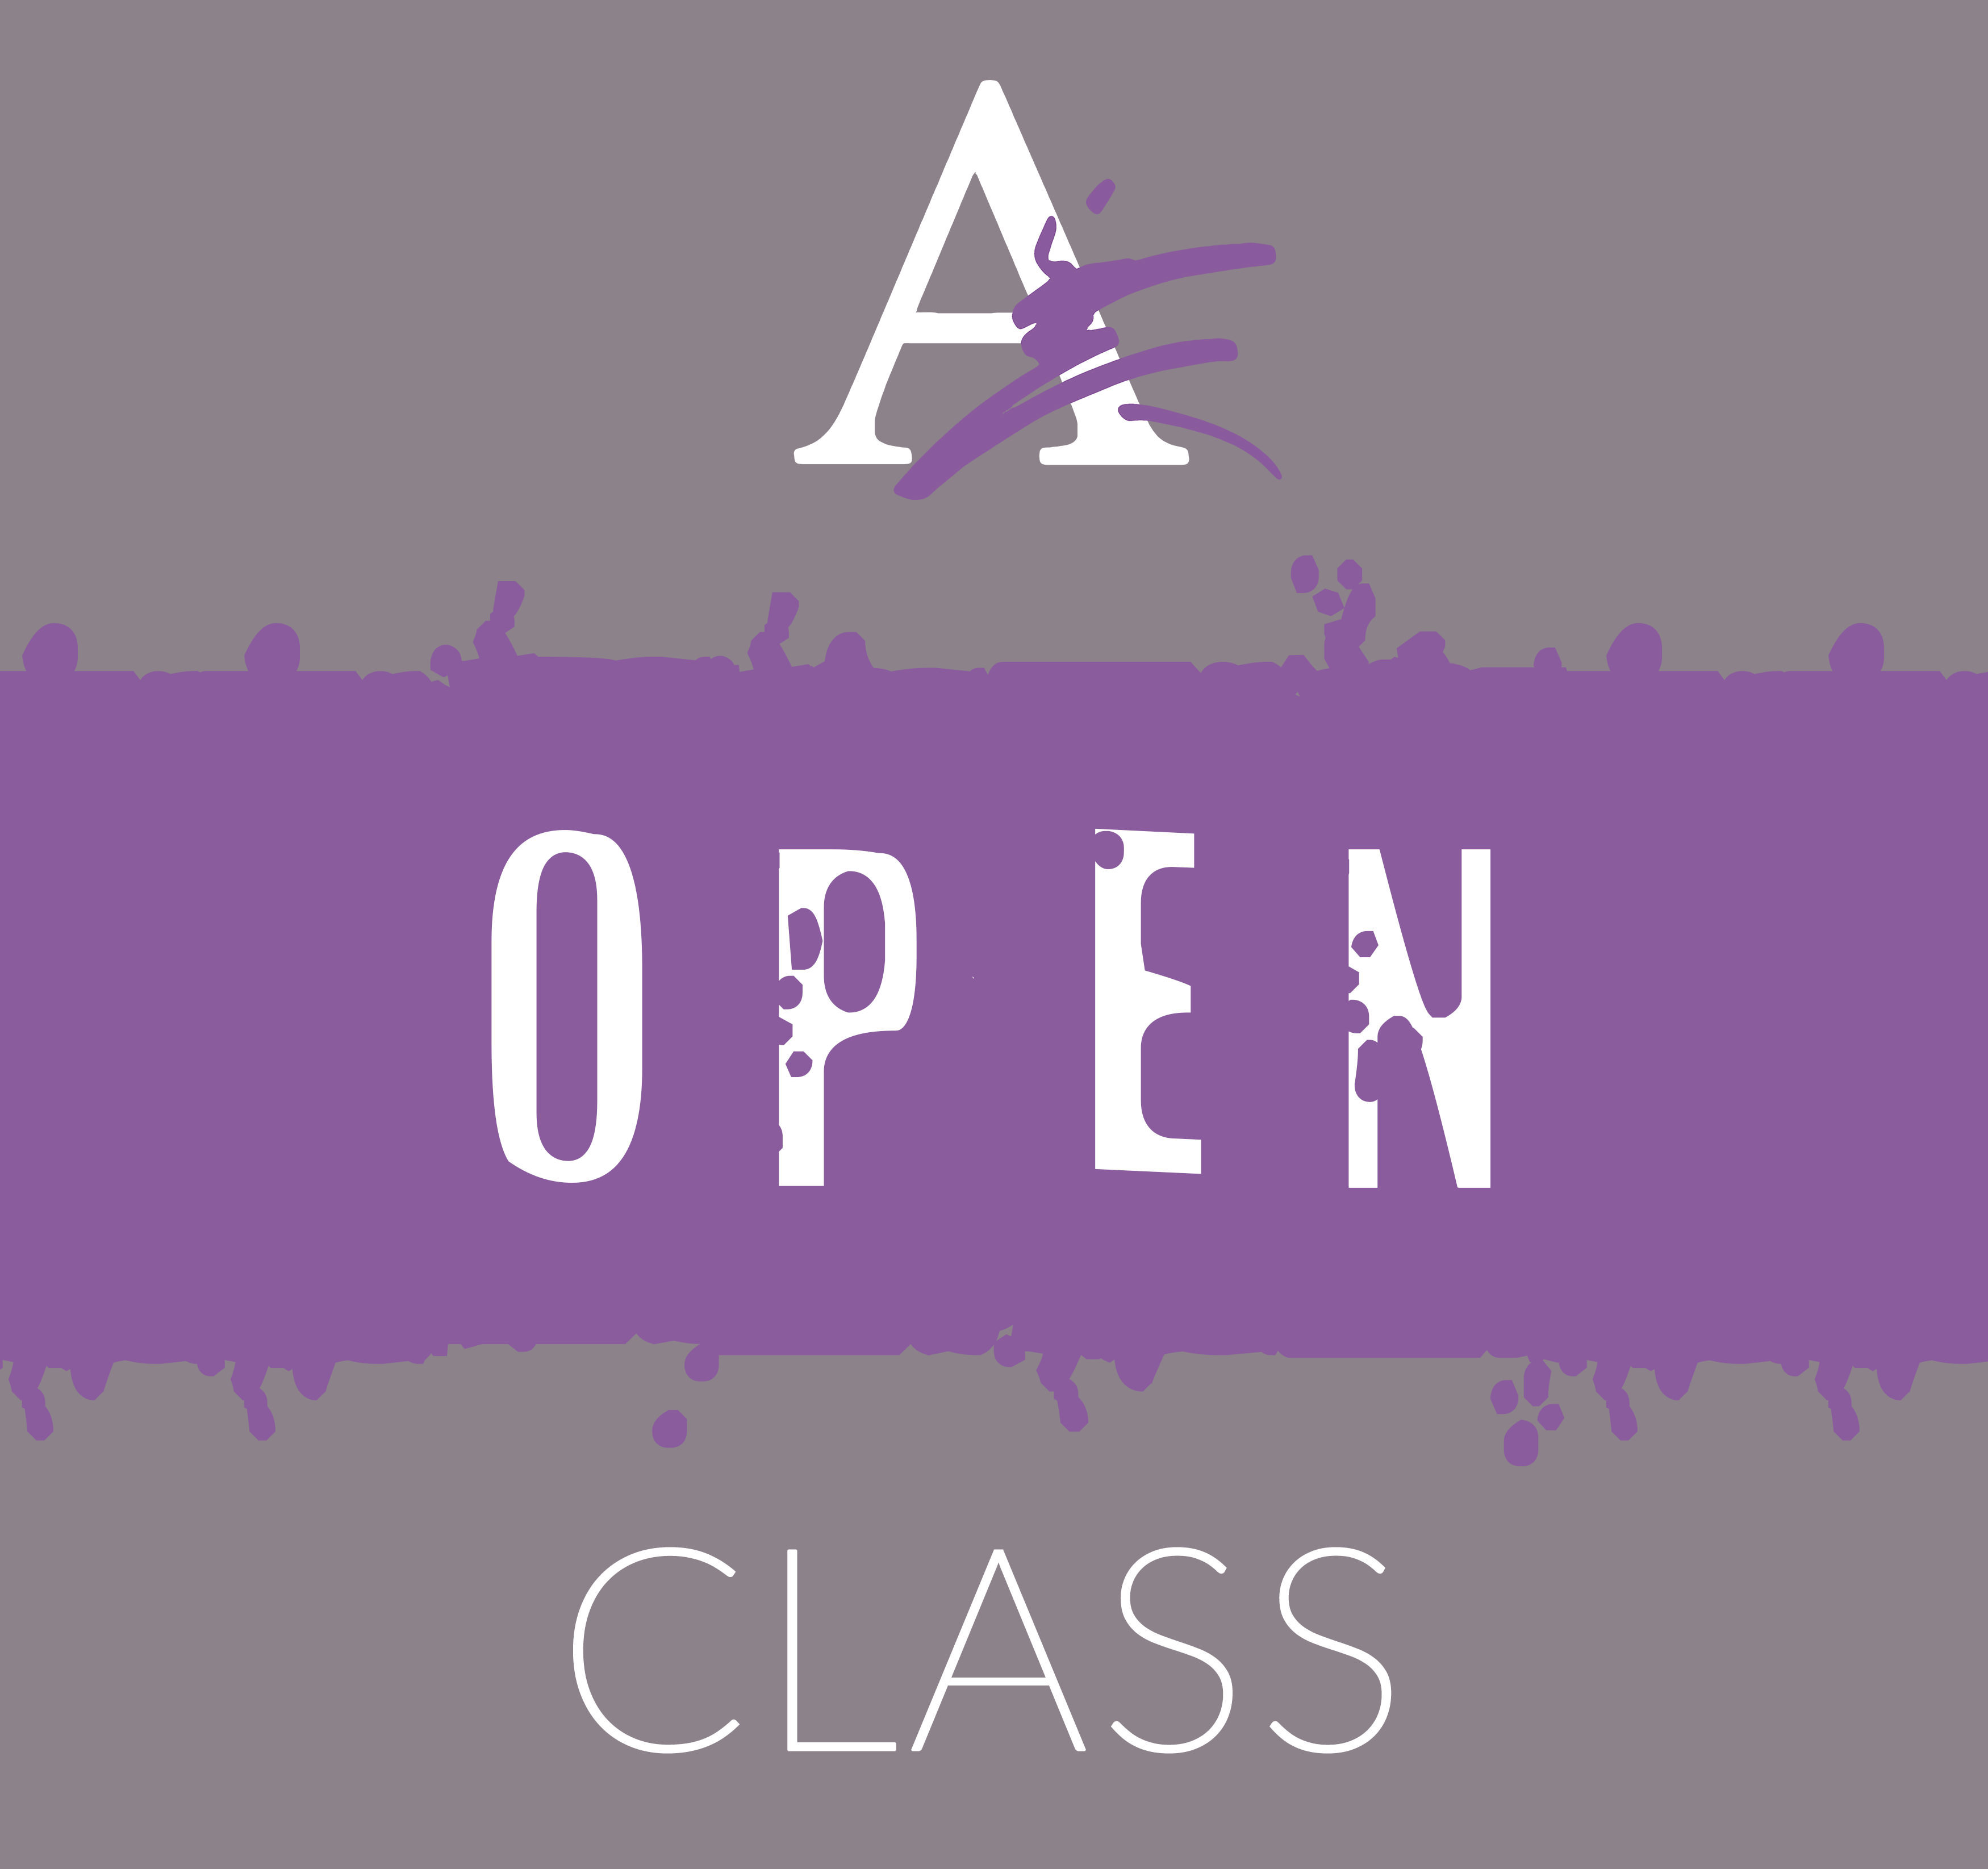 Open Class